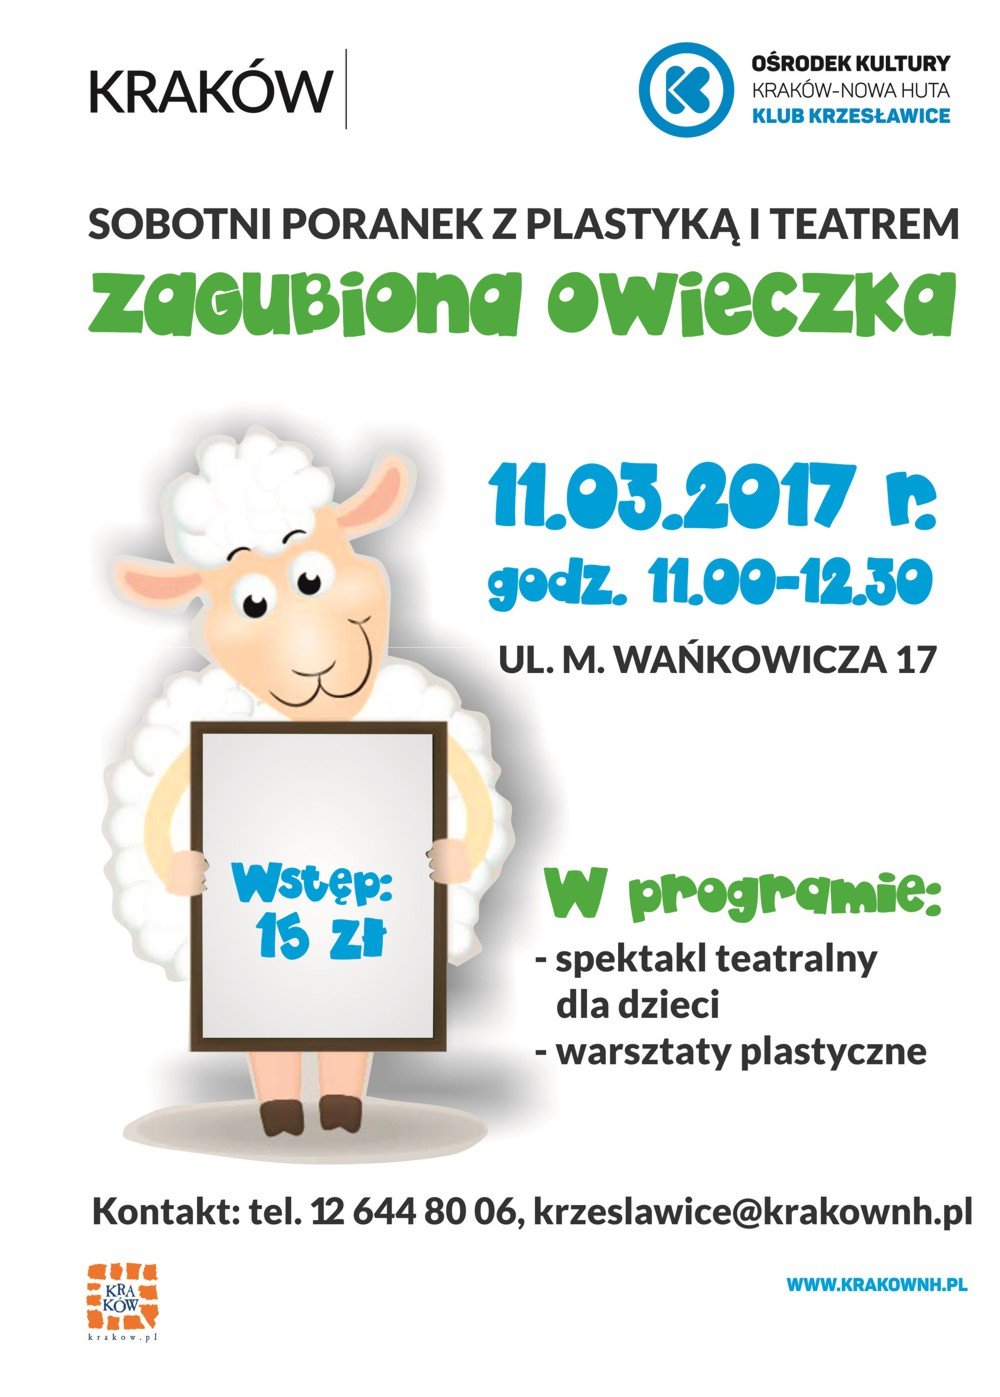 Sobotnie poranki z teatrem i plastyką w Klubie Krzesławice - Zagubiona owieczka